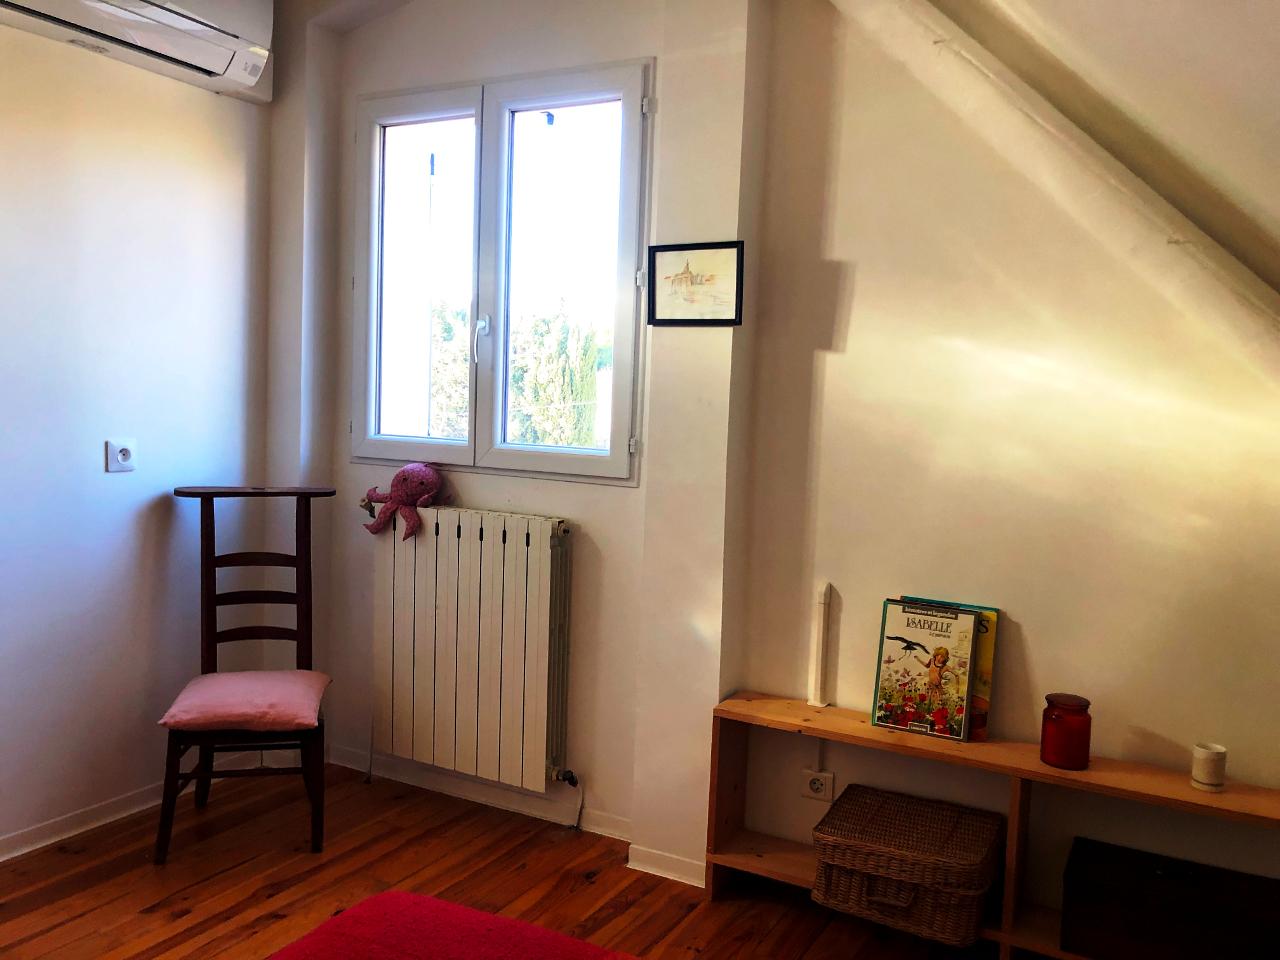 Hôte GreenGo: Chambres chez l'habitant dans un ancien cabanon marseillais - Image 11